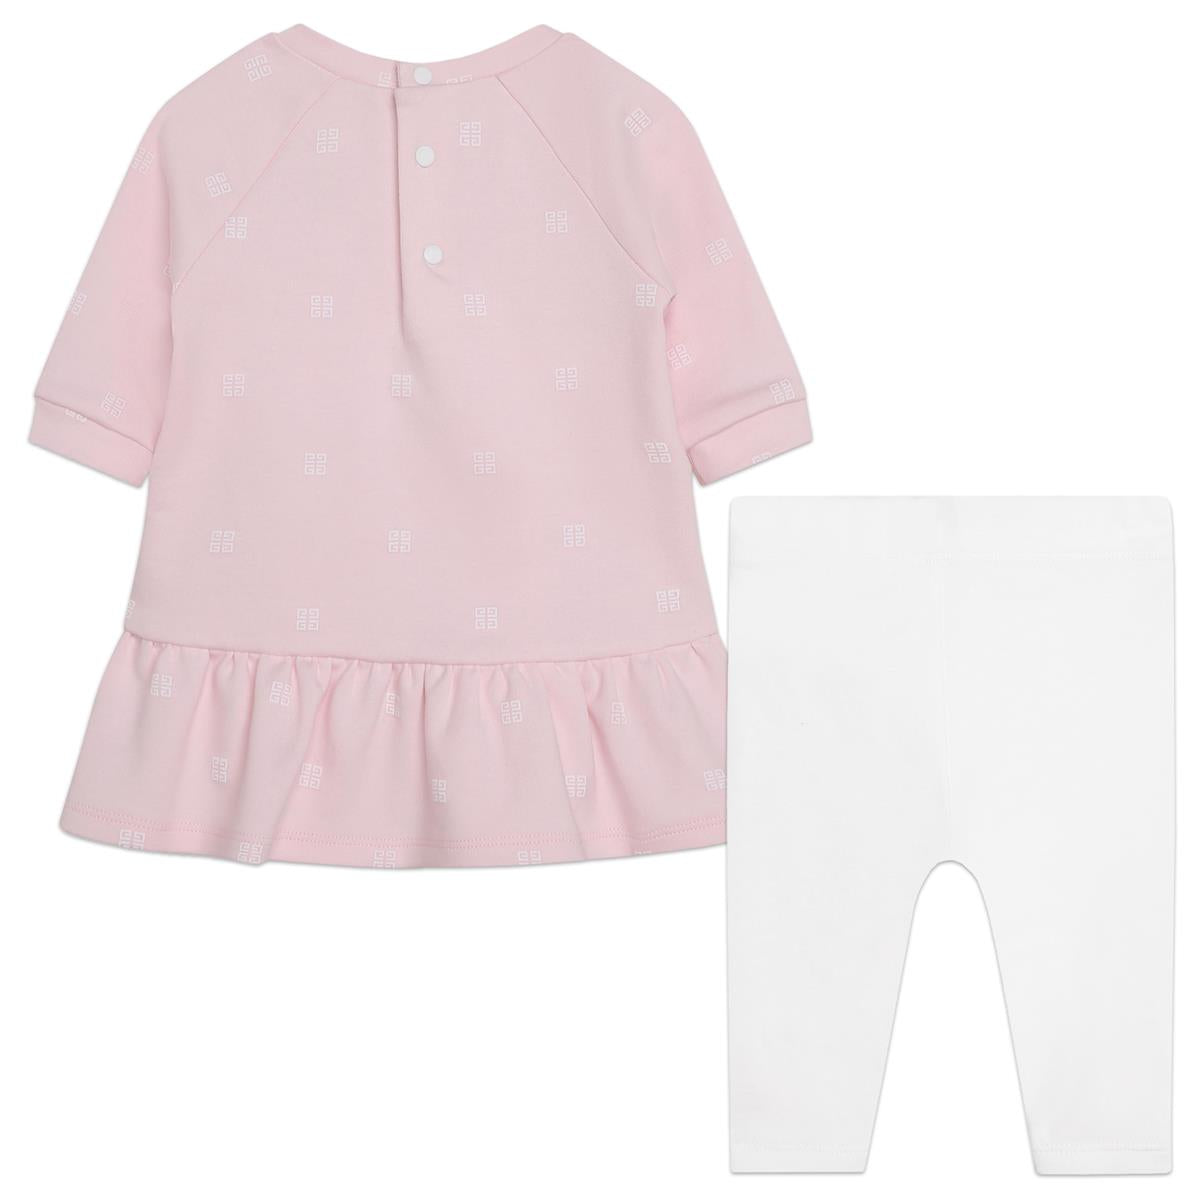 Baby Girls Pink Cotton Set